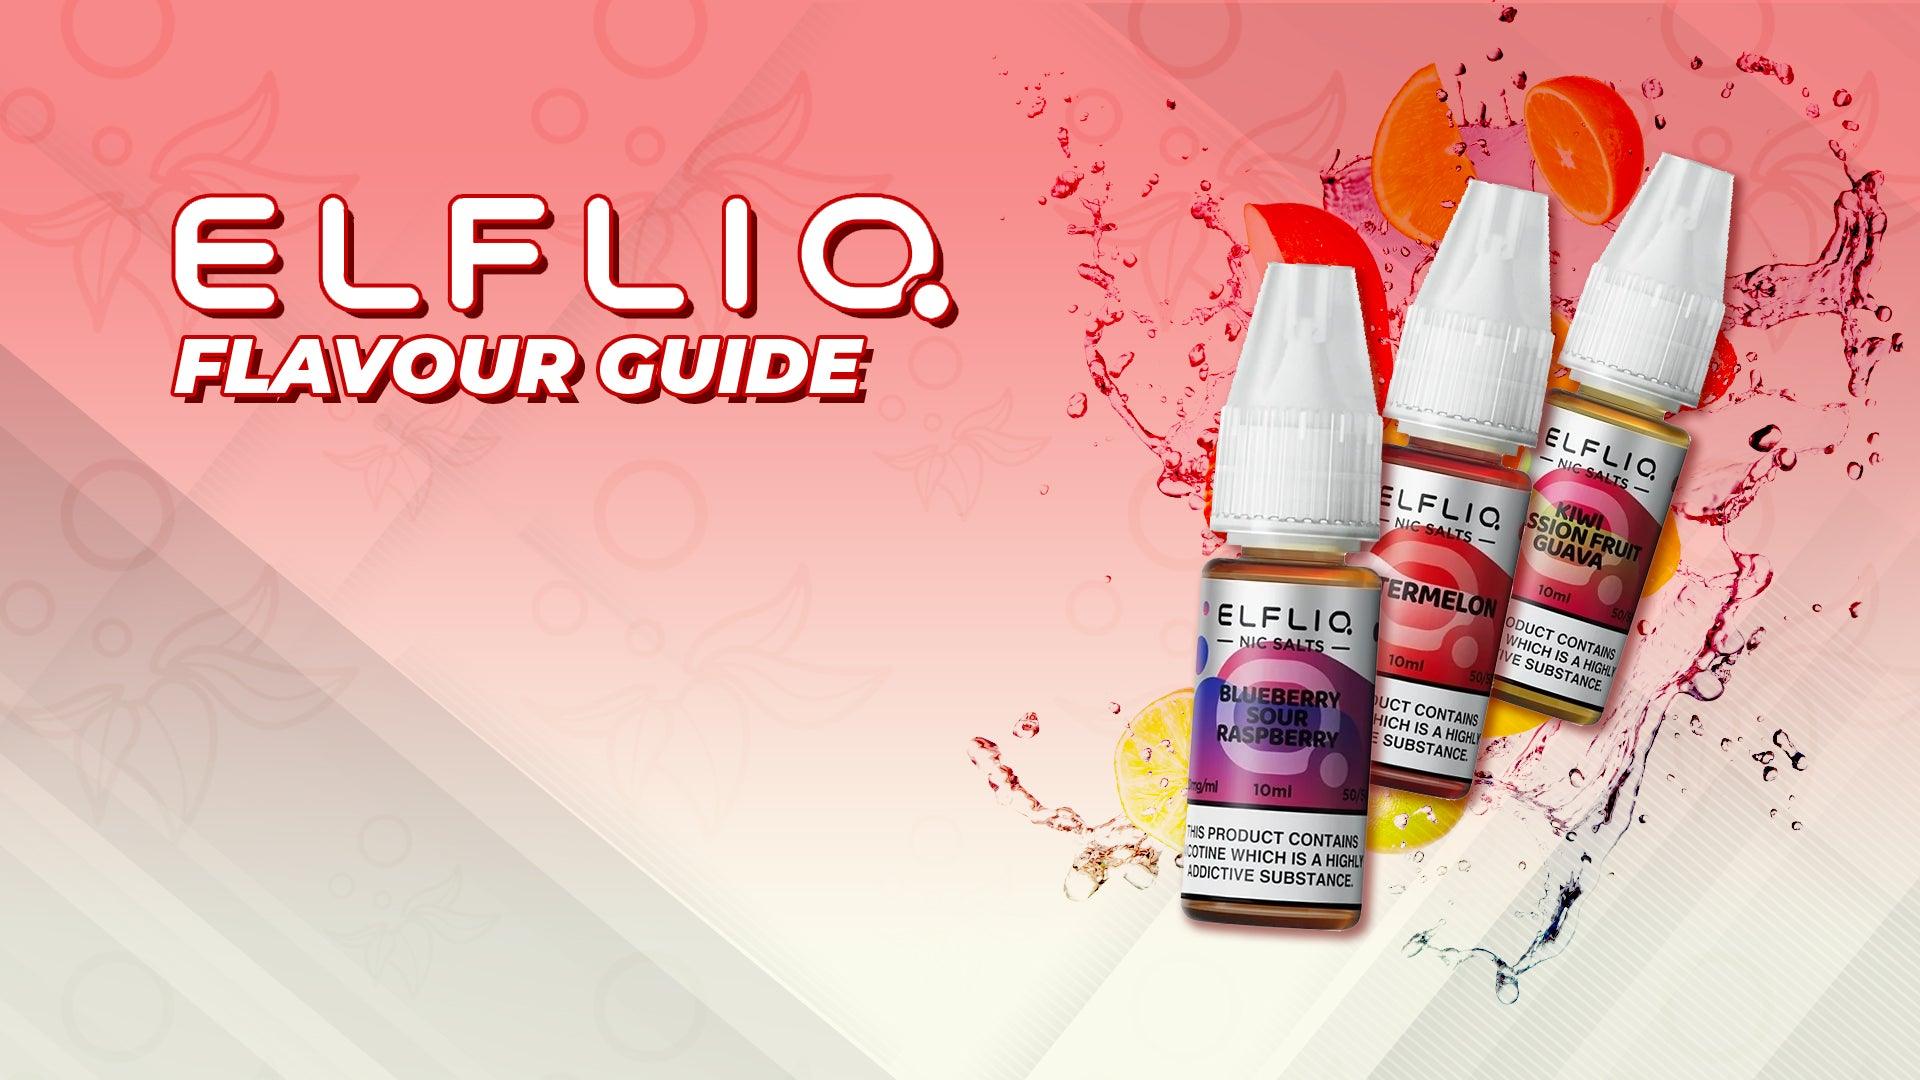 Elf Bar Elfliq Flavour Guide - Brand:Elf Bar, Category:E-Liquids, Sub Category:Nicotine Salts